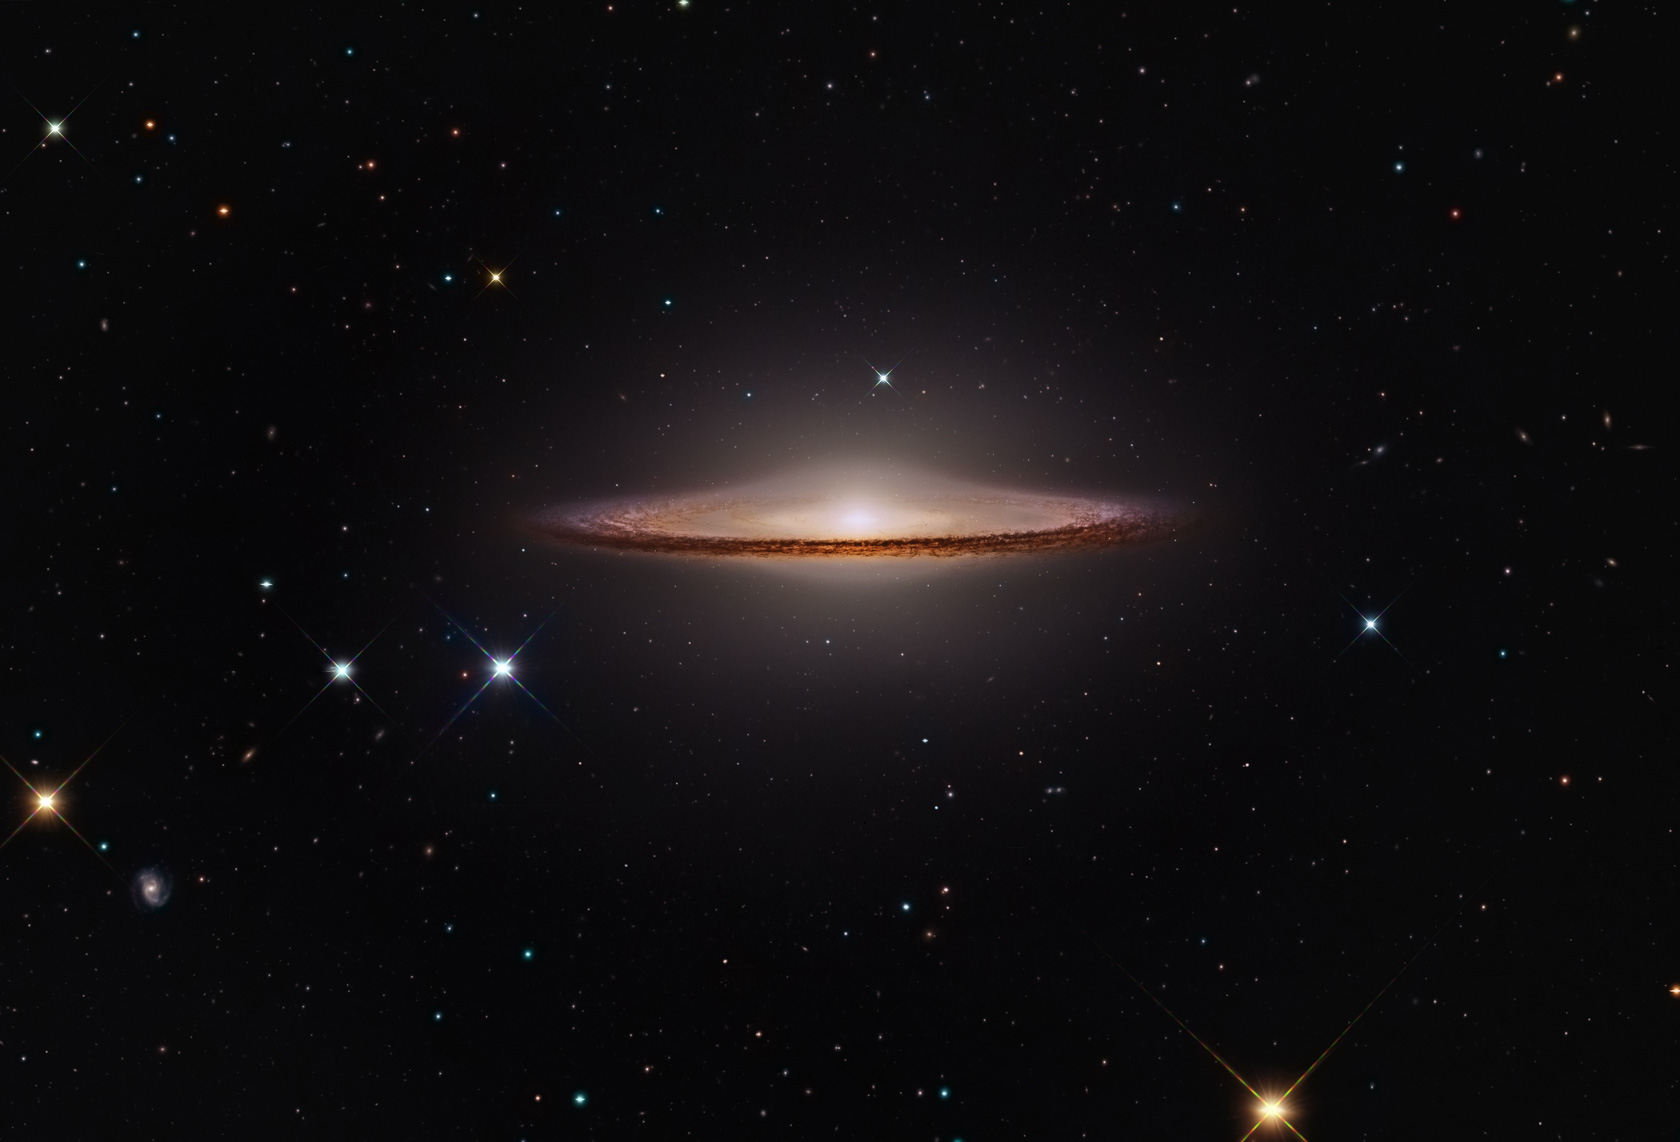 La Galassia Sombrero, conosciuta anche con le sigle M104, è una galassia nella costellazione della Vergine ed è caratterizzata da una banda oscura che l'ha resa famosa 